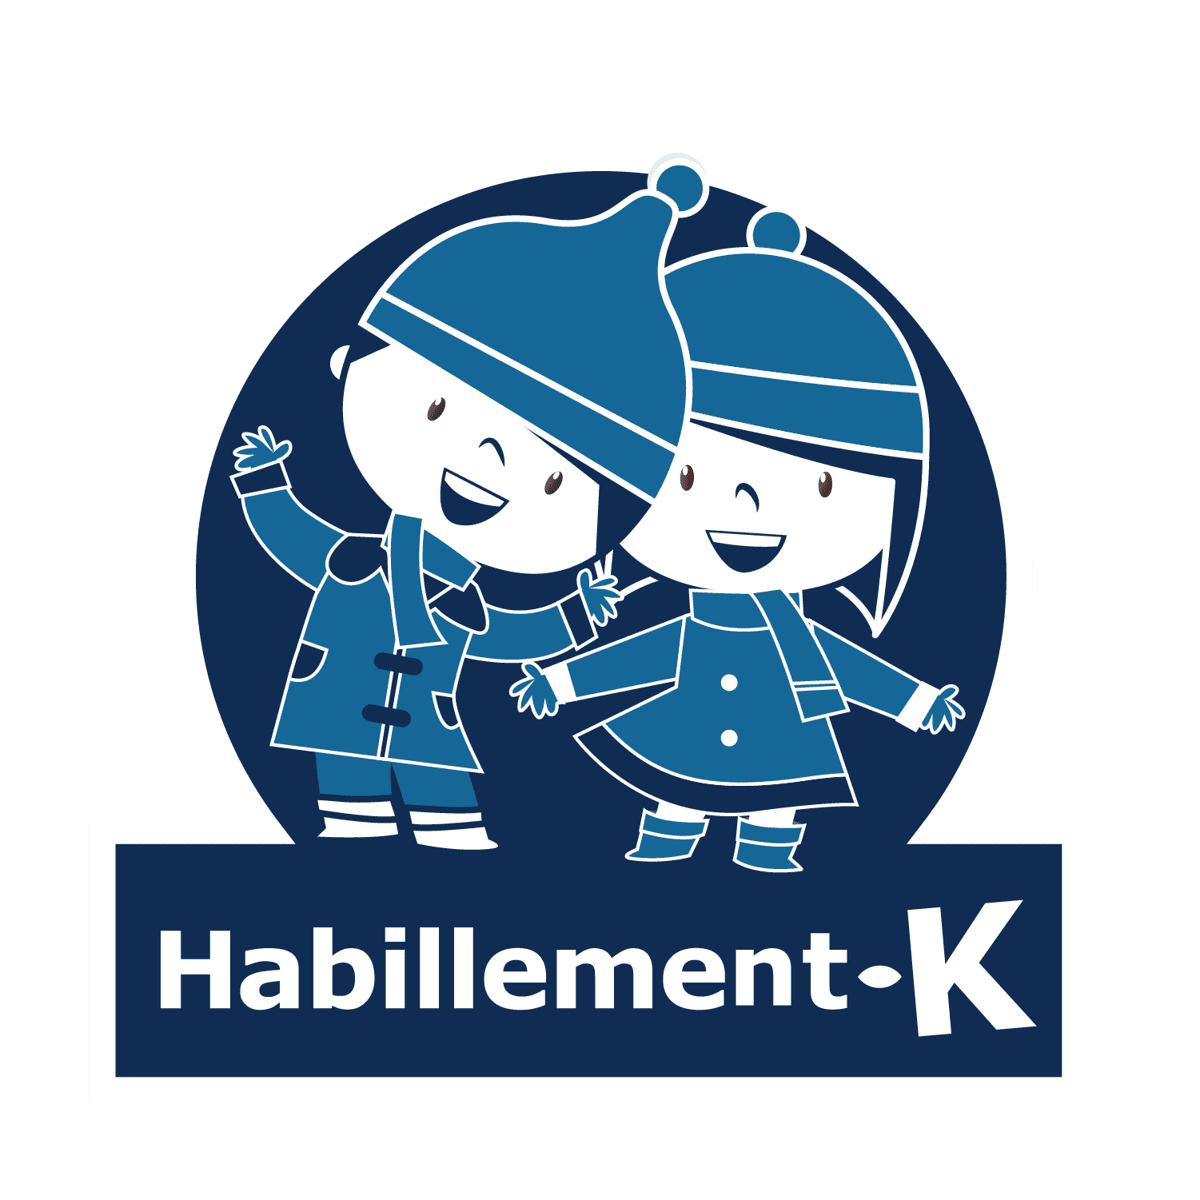 Habillement-K